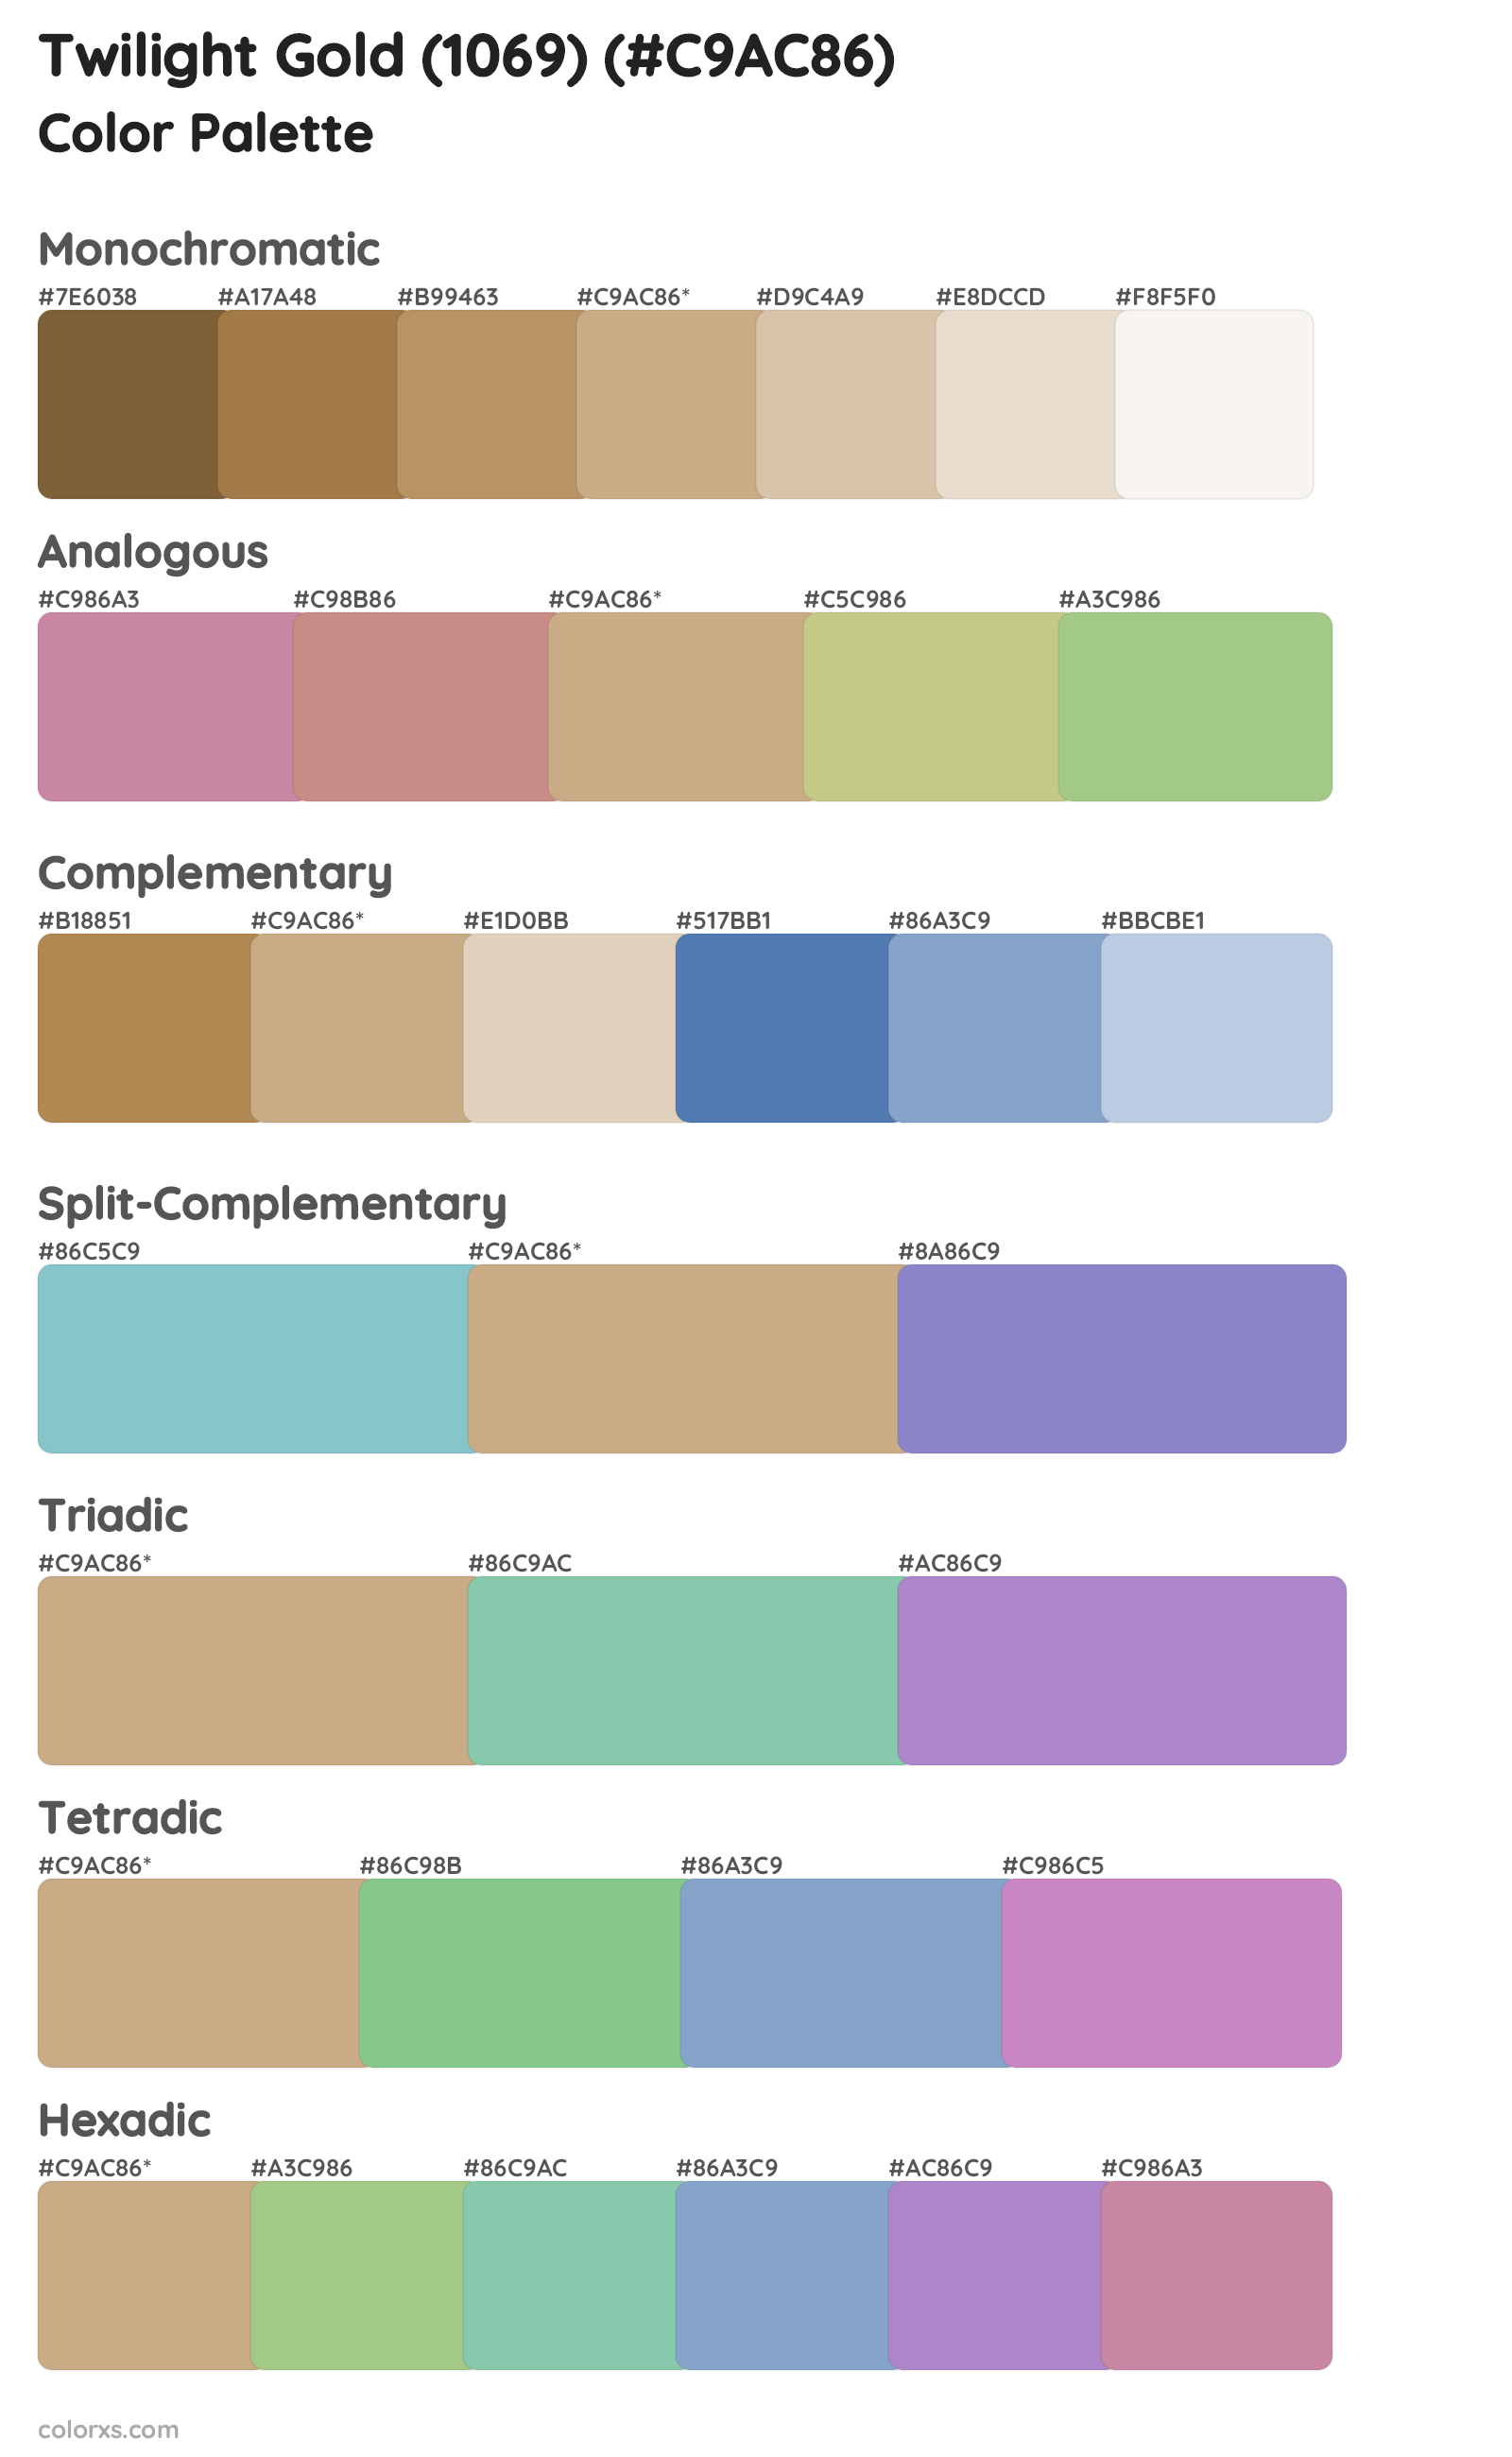 Twilight Gold (1069) Color Scheme Palettes